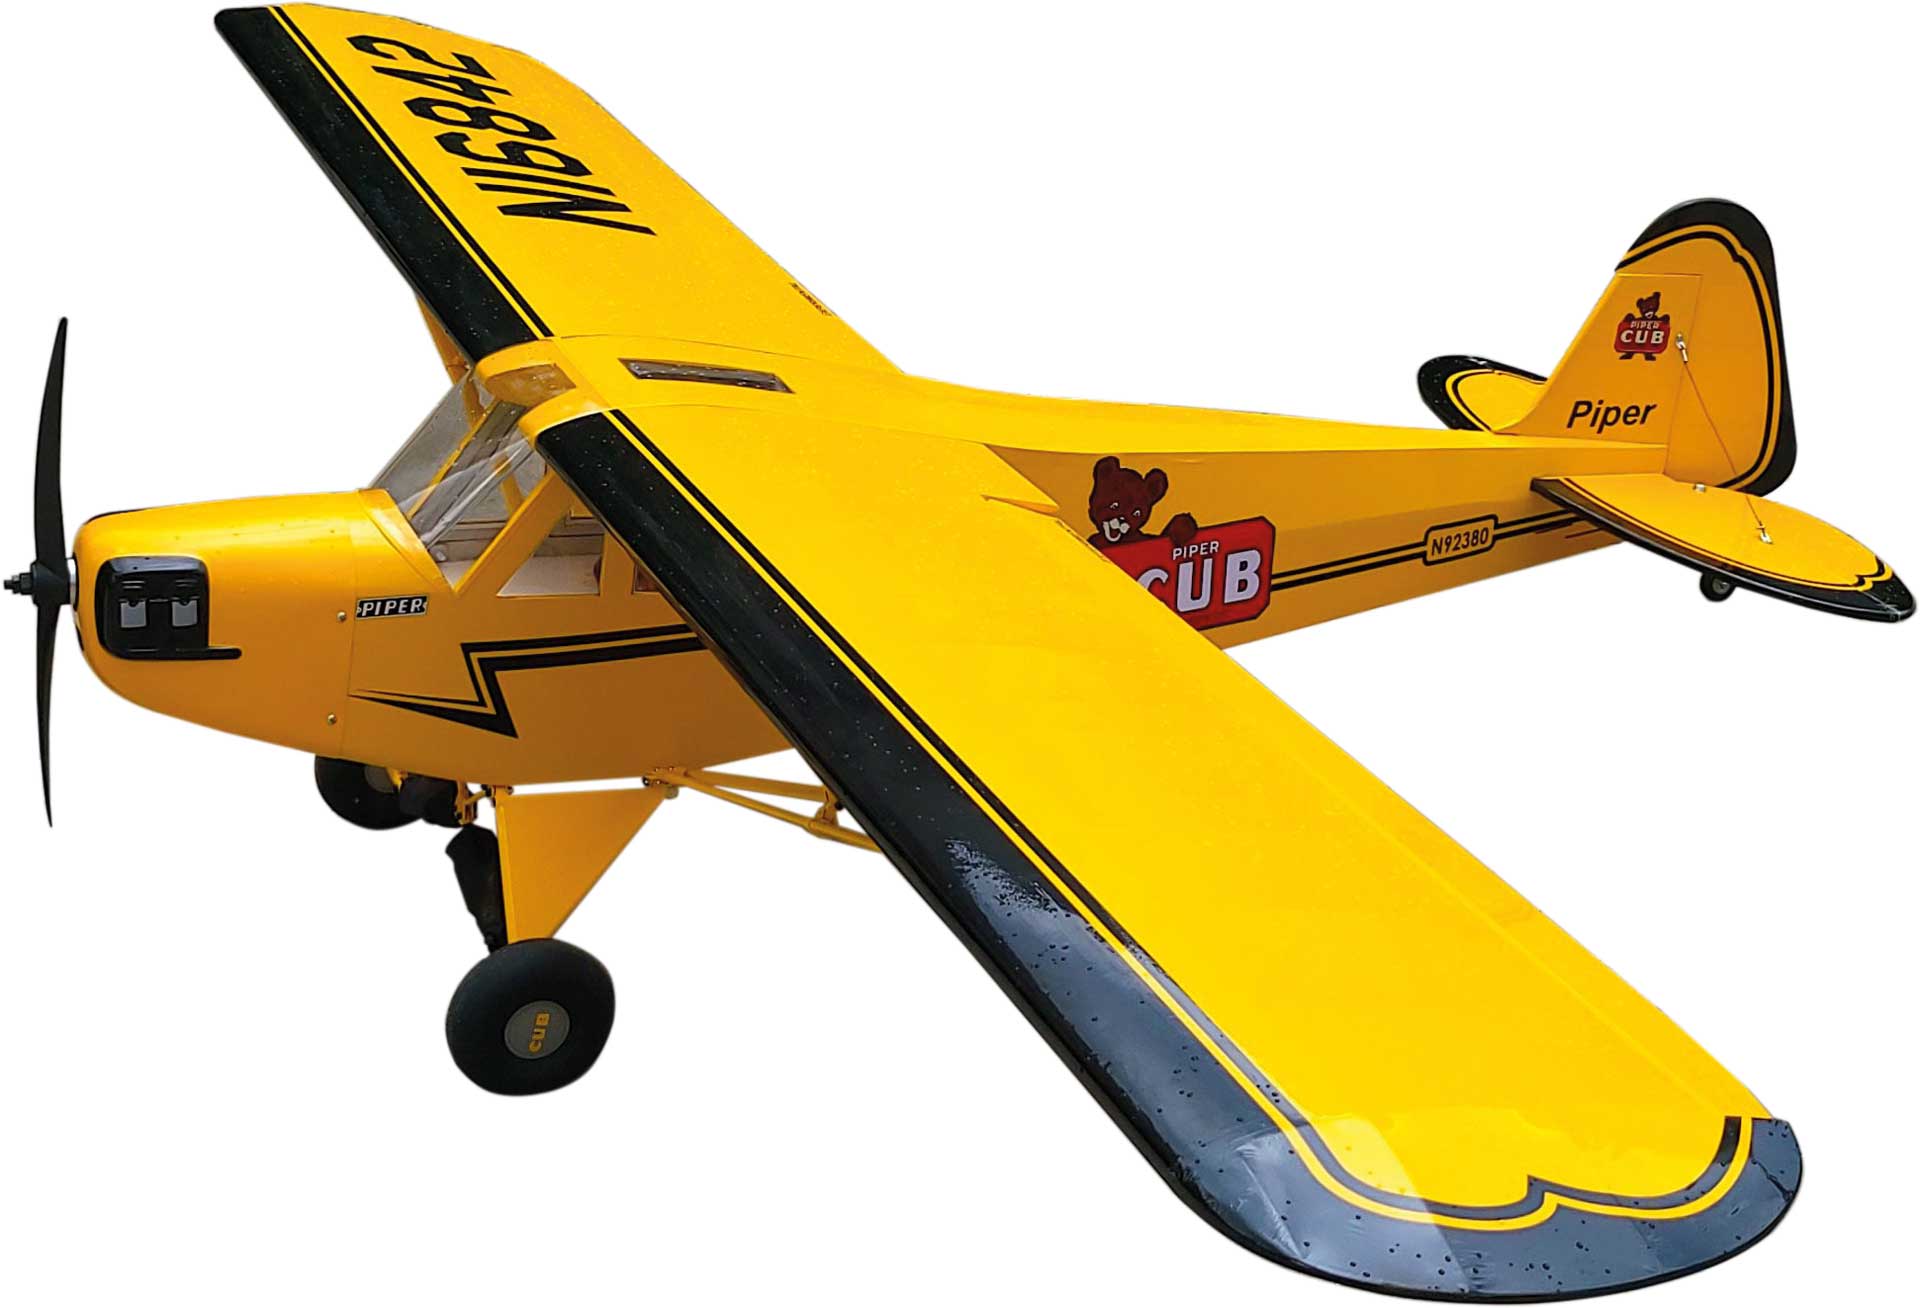 Seagull Models ( SG-Models ) Piper J-3 Cub 88,2" 20cc ARF